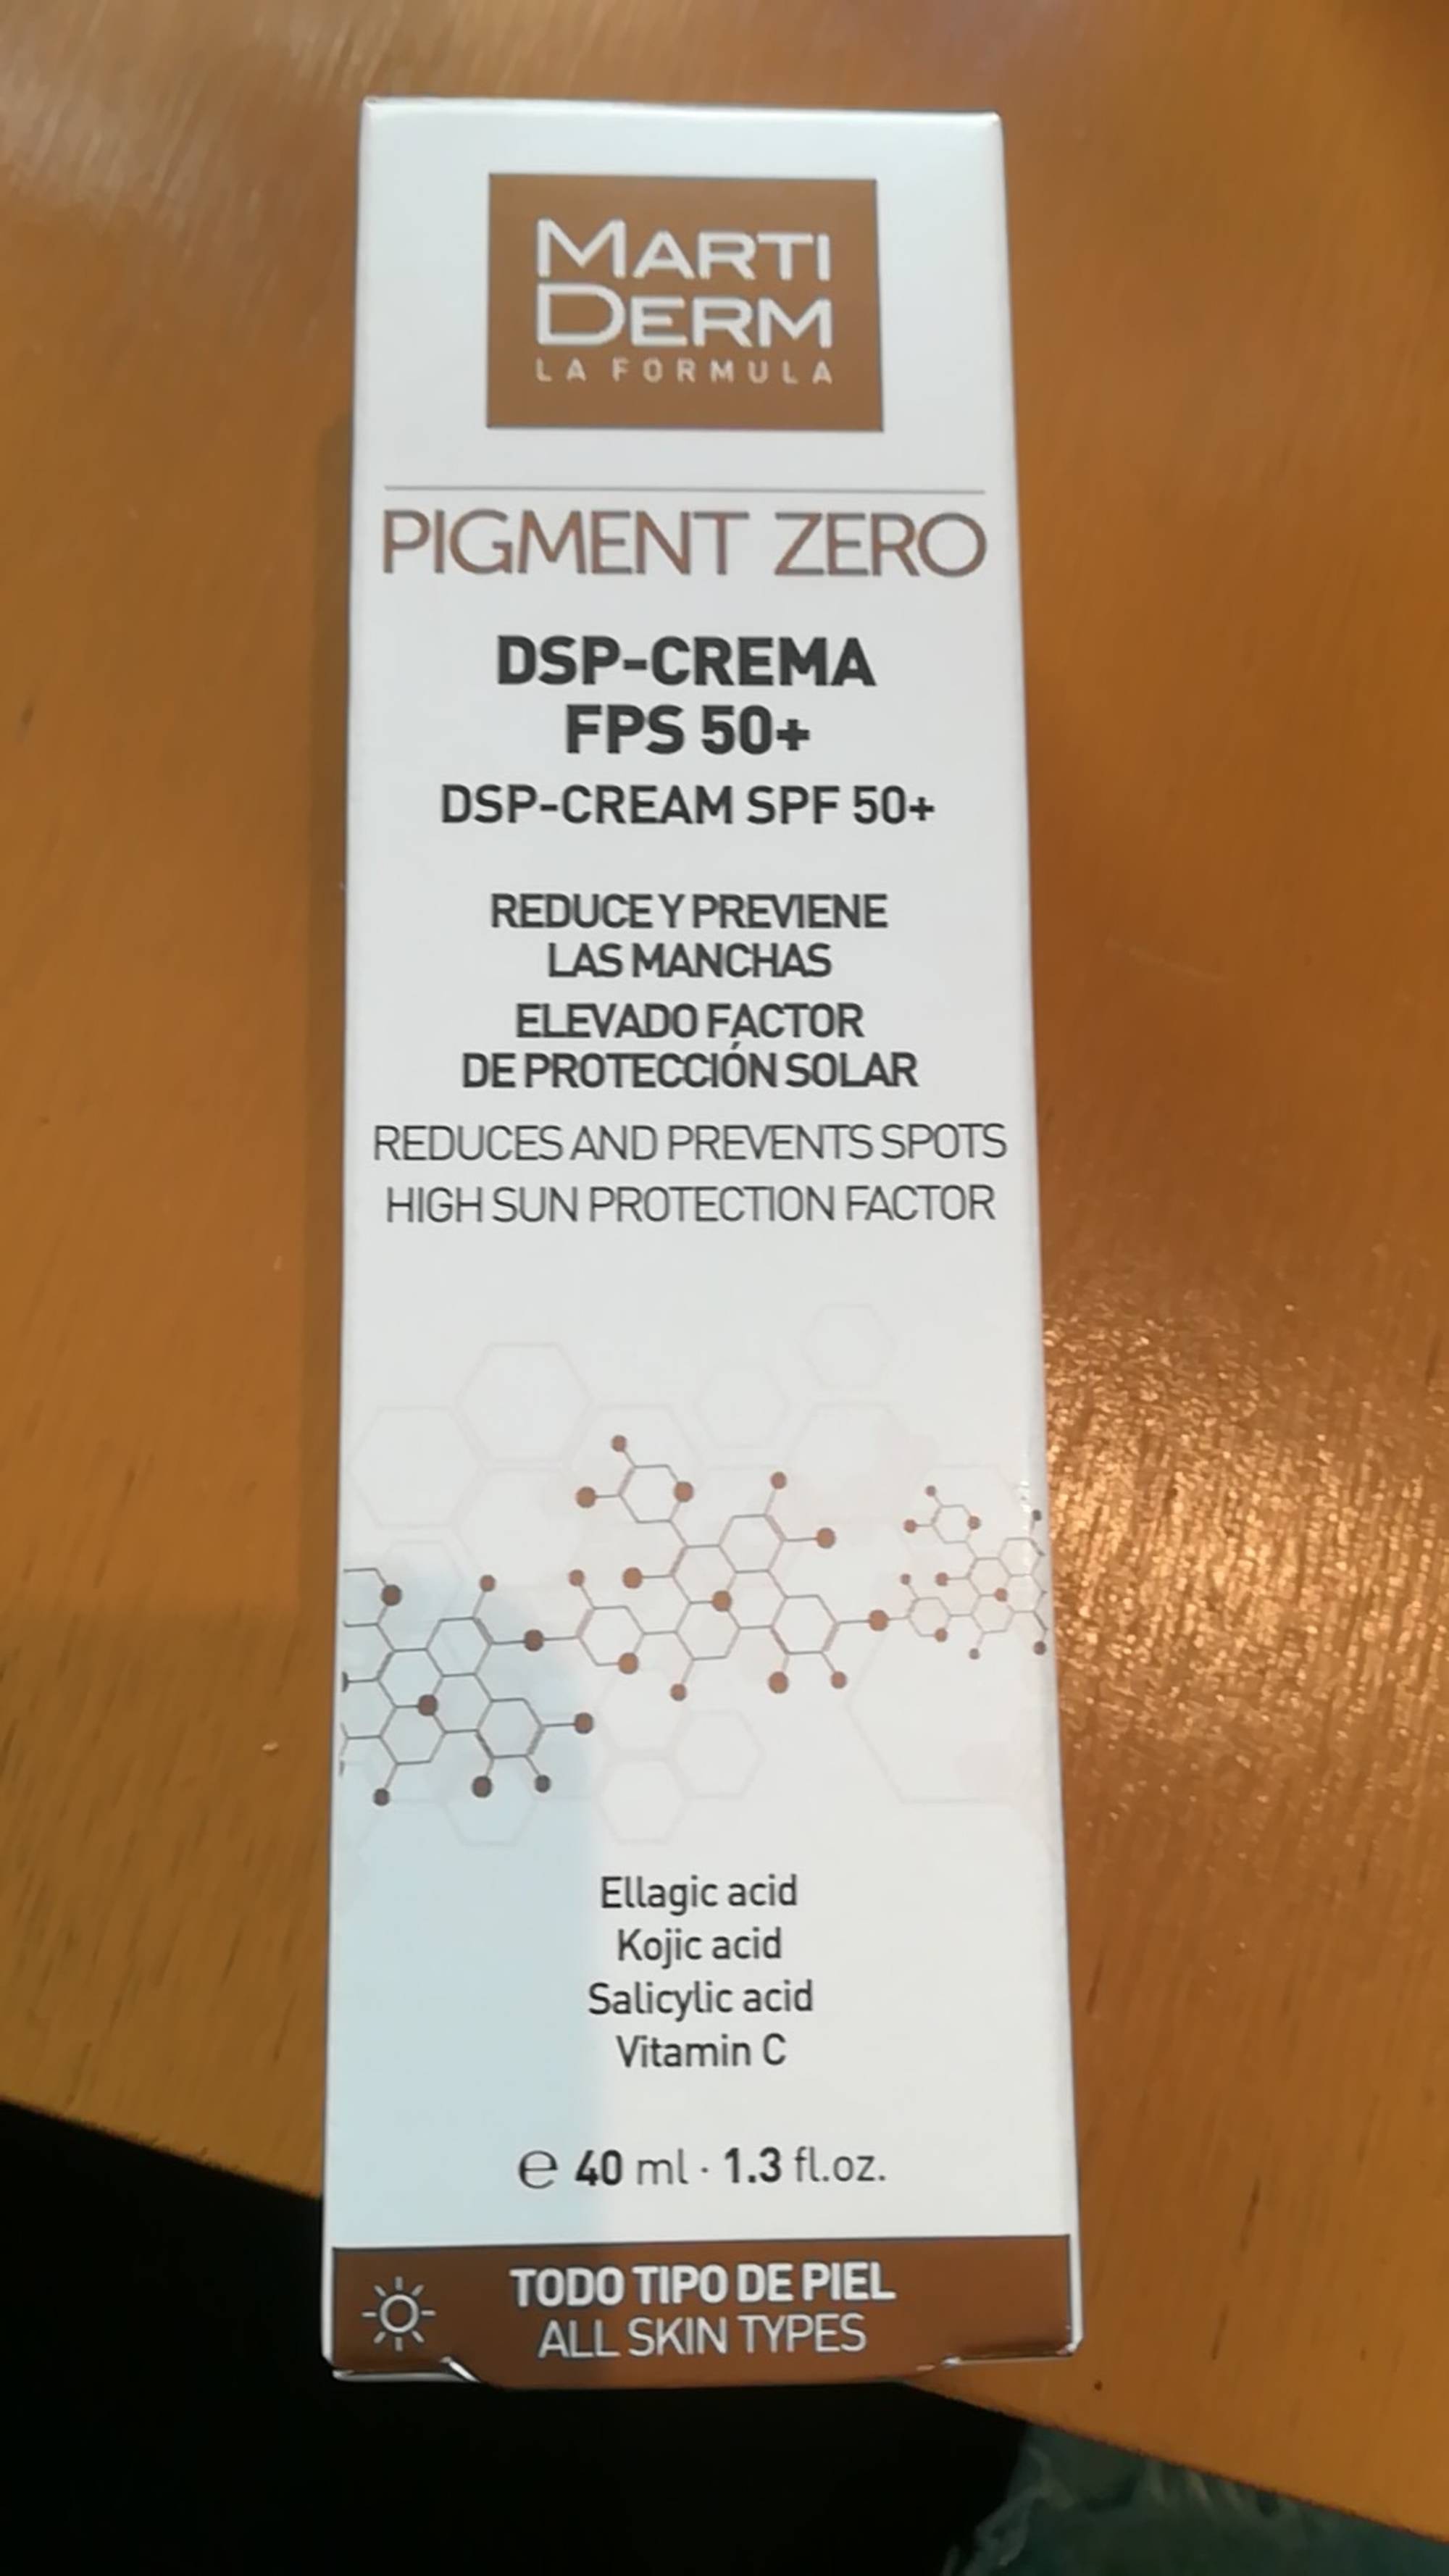 MARTIDERM - Pigment zero - DSP-Crema SPF 50+